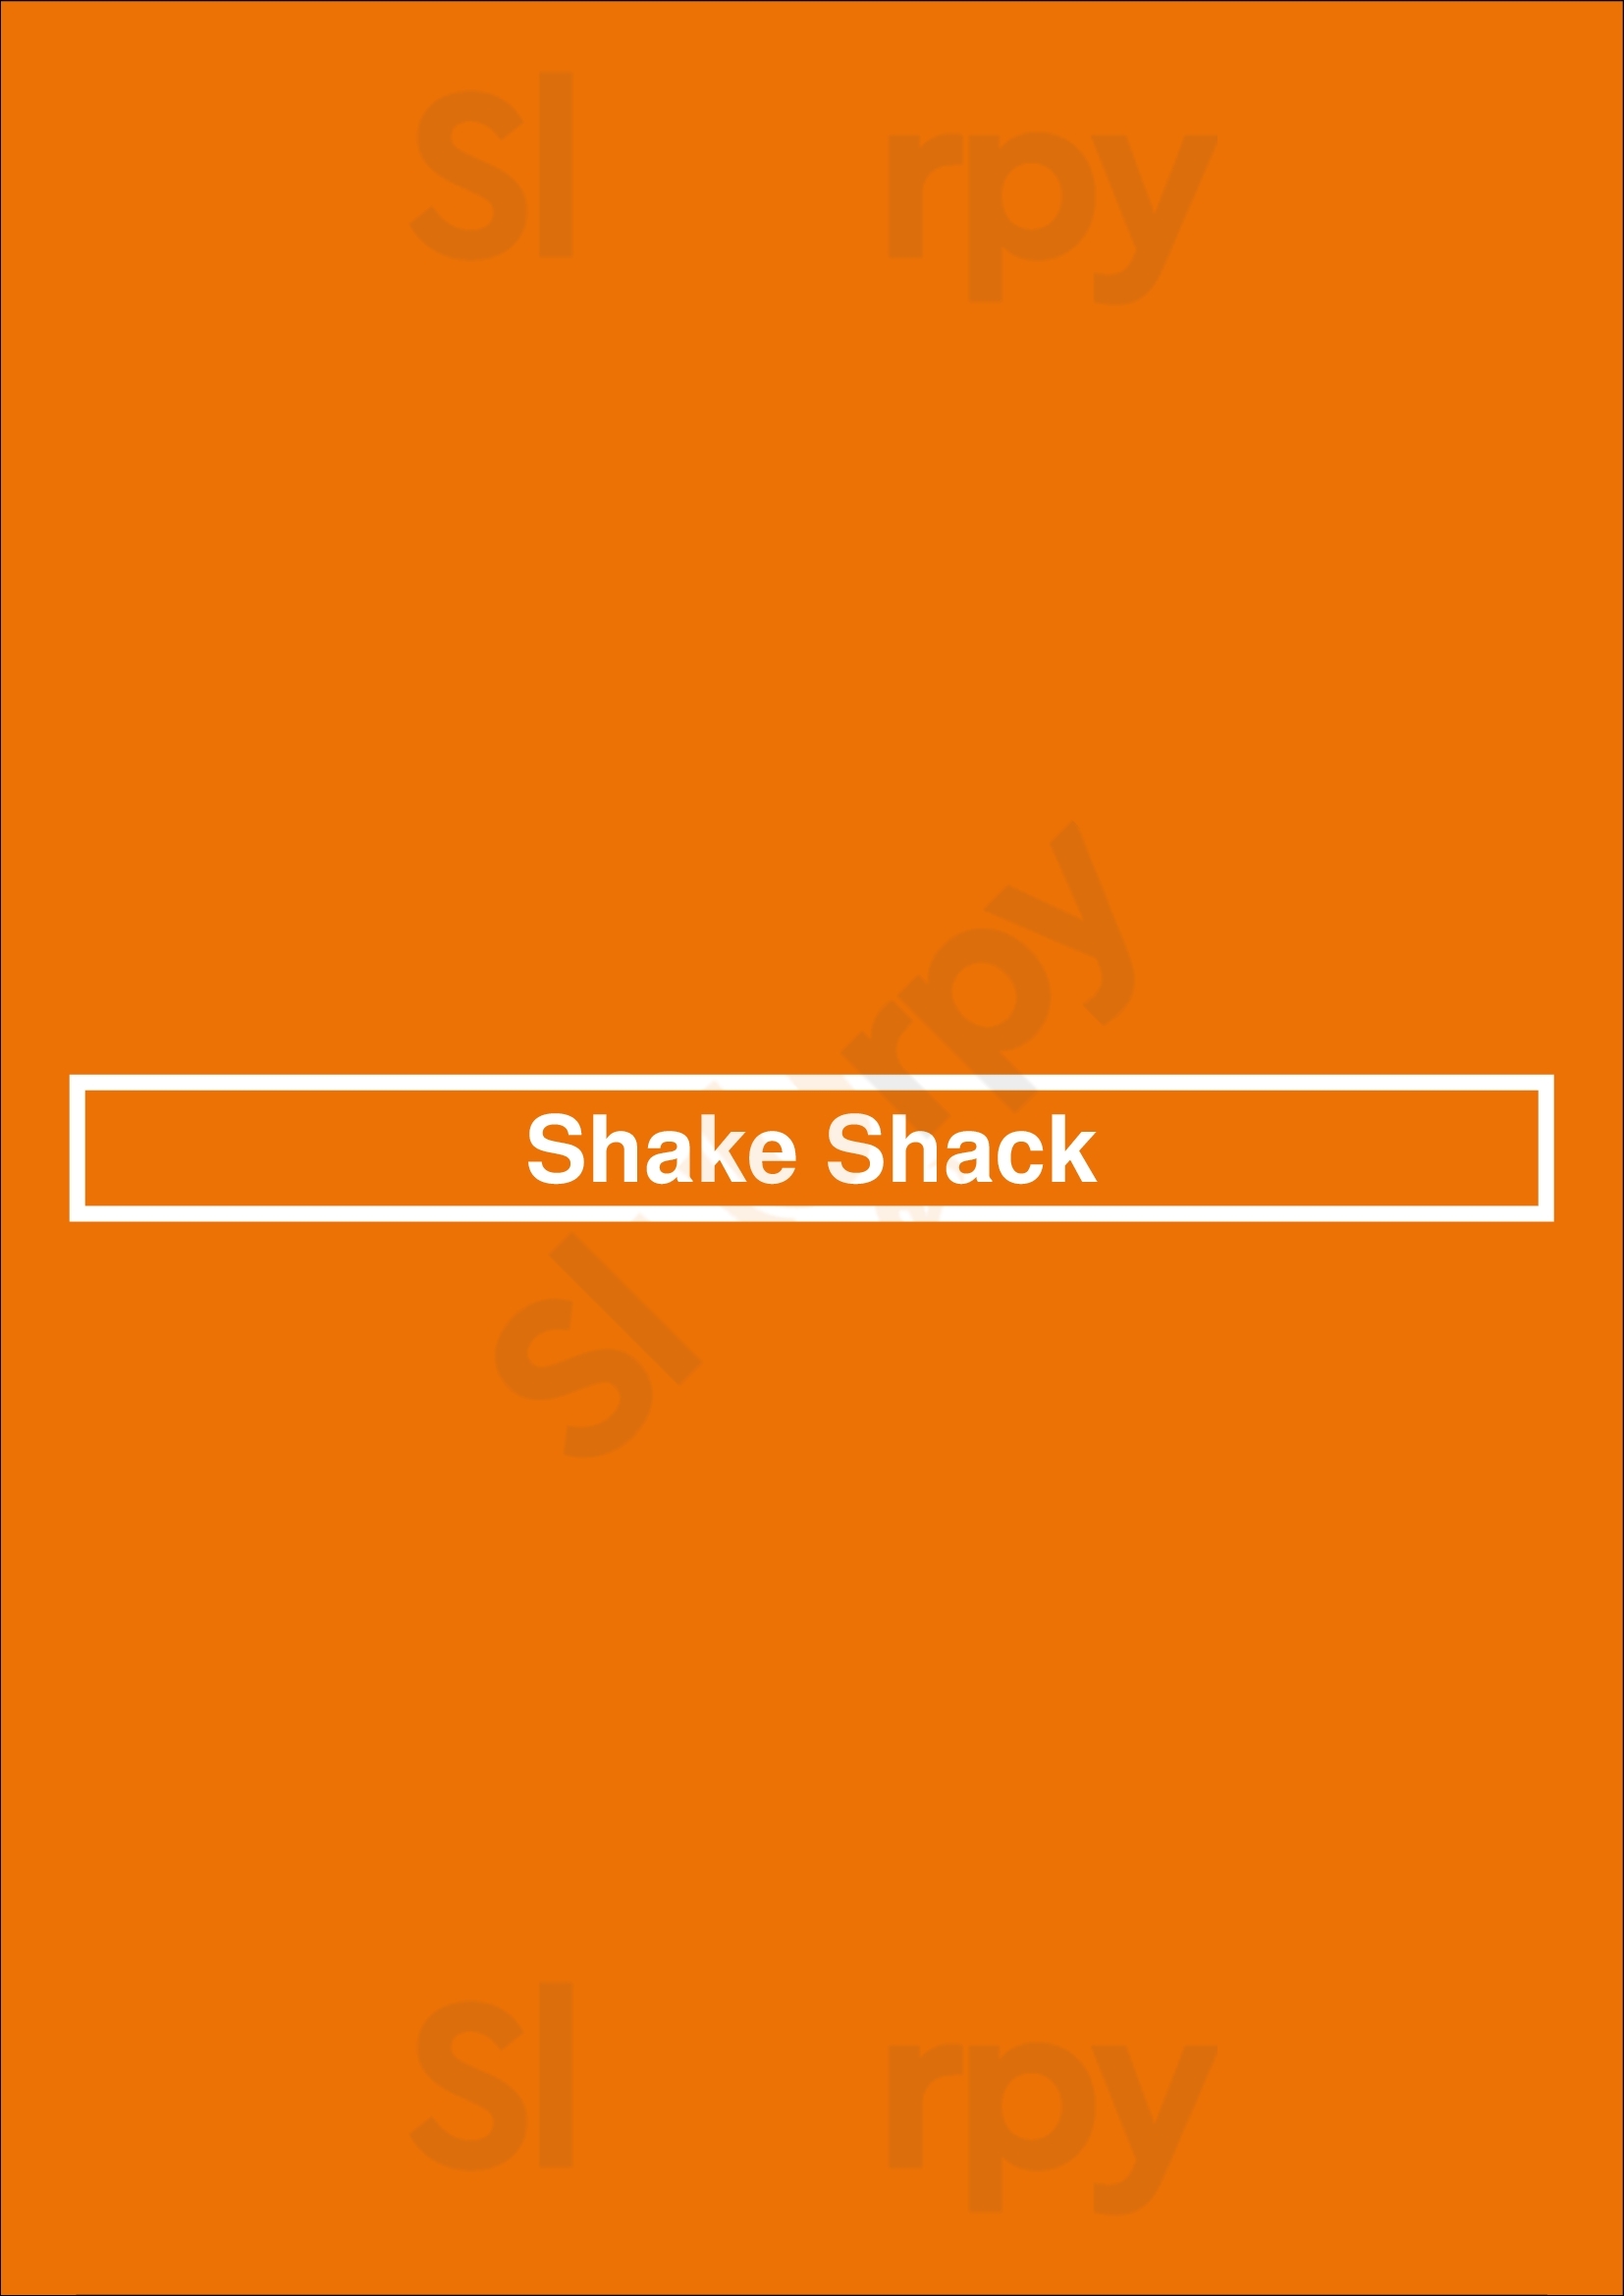 Shake Shack Dupont Circle Washington DC Menu - 1